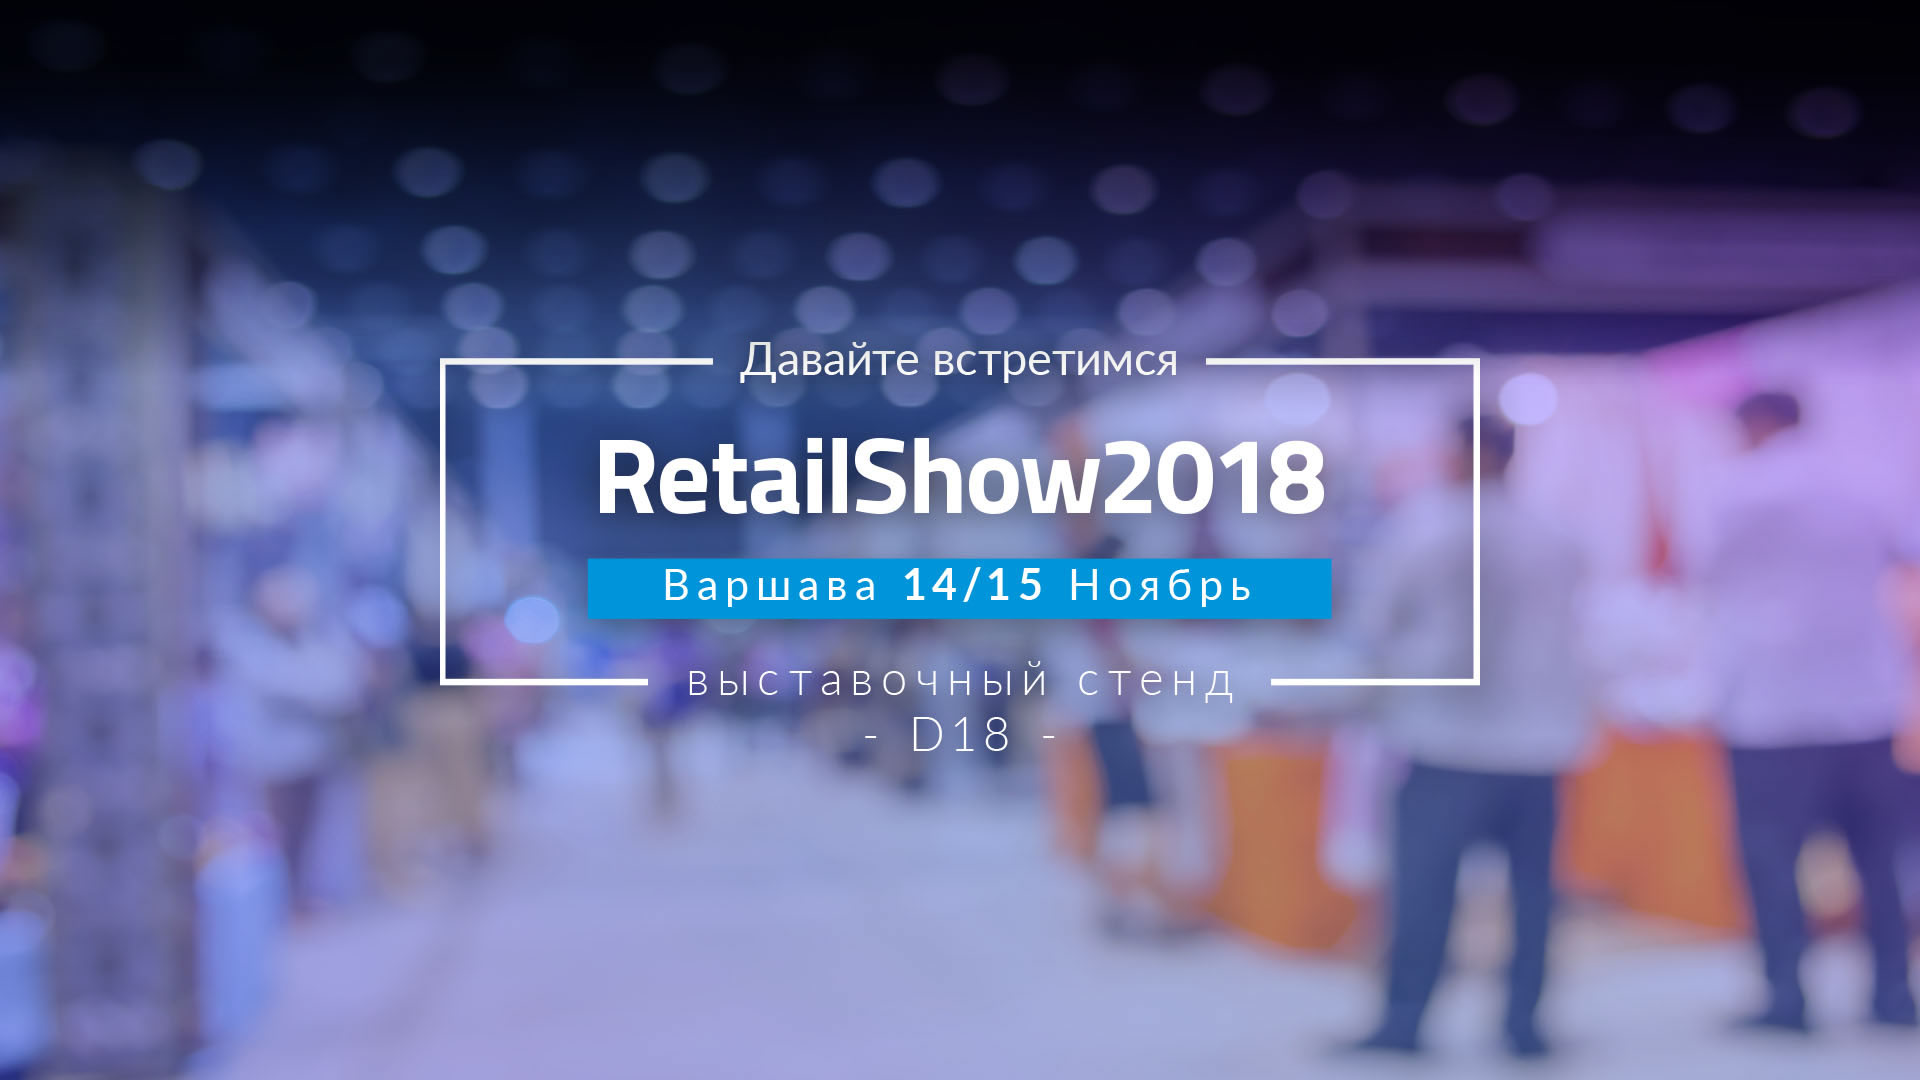 Мы приглашаем вас на Retail Show 2018